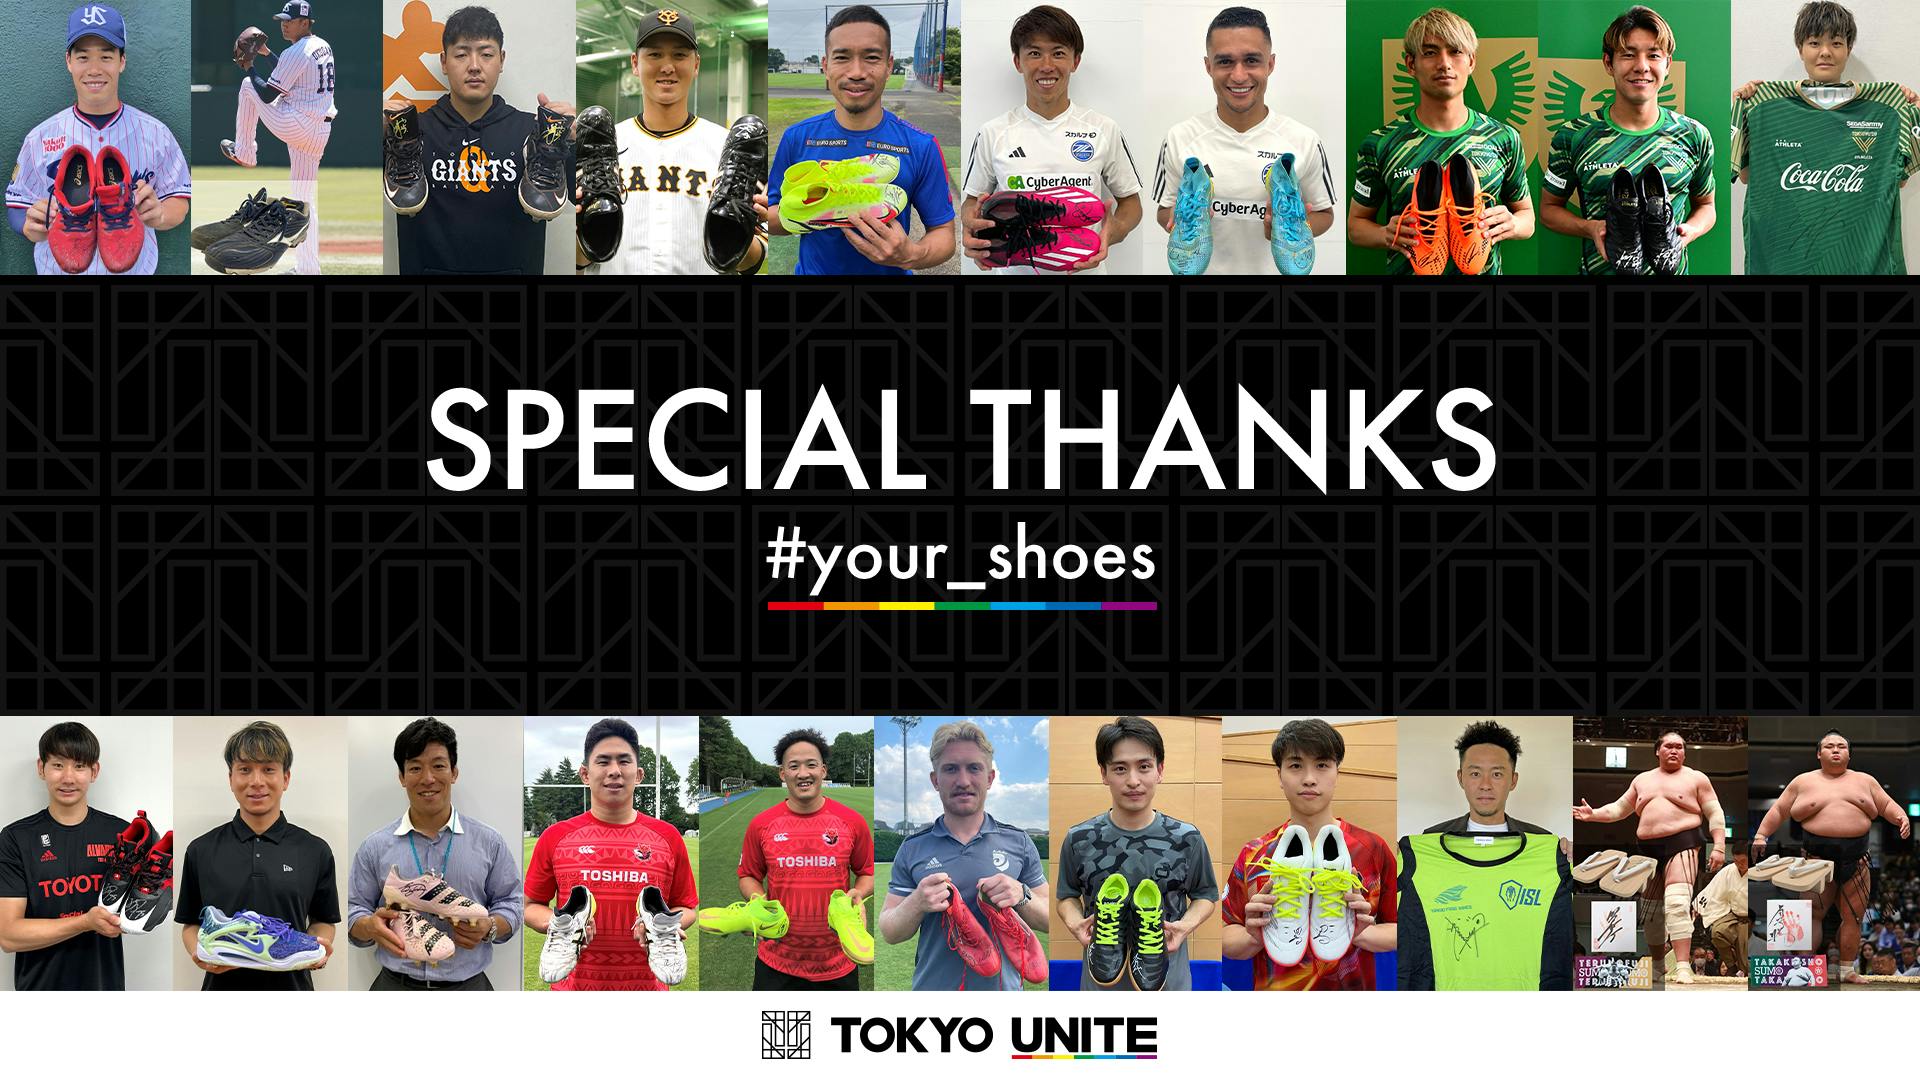 スポーツシューズを届ける<br>「#your_shoes」プロジェクト<br>チャリティーオークション支援金額のご報告